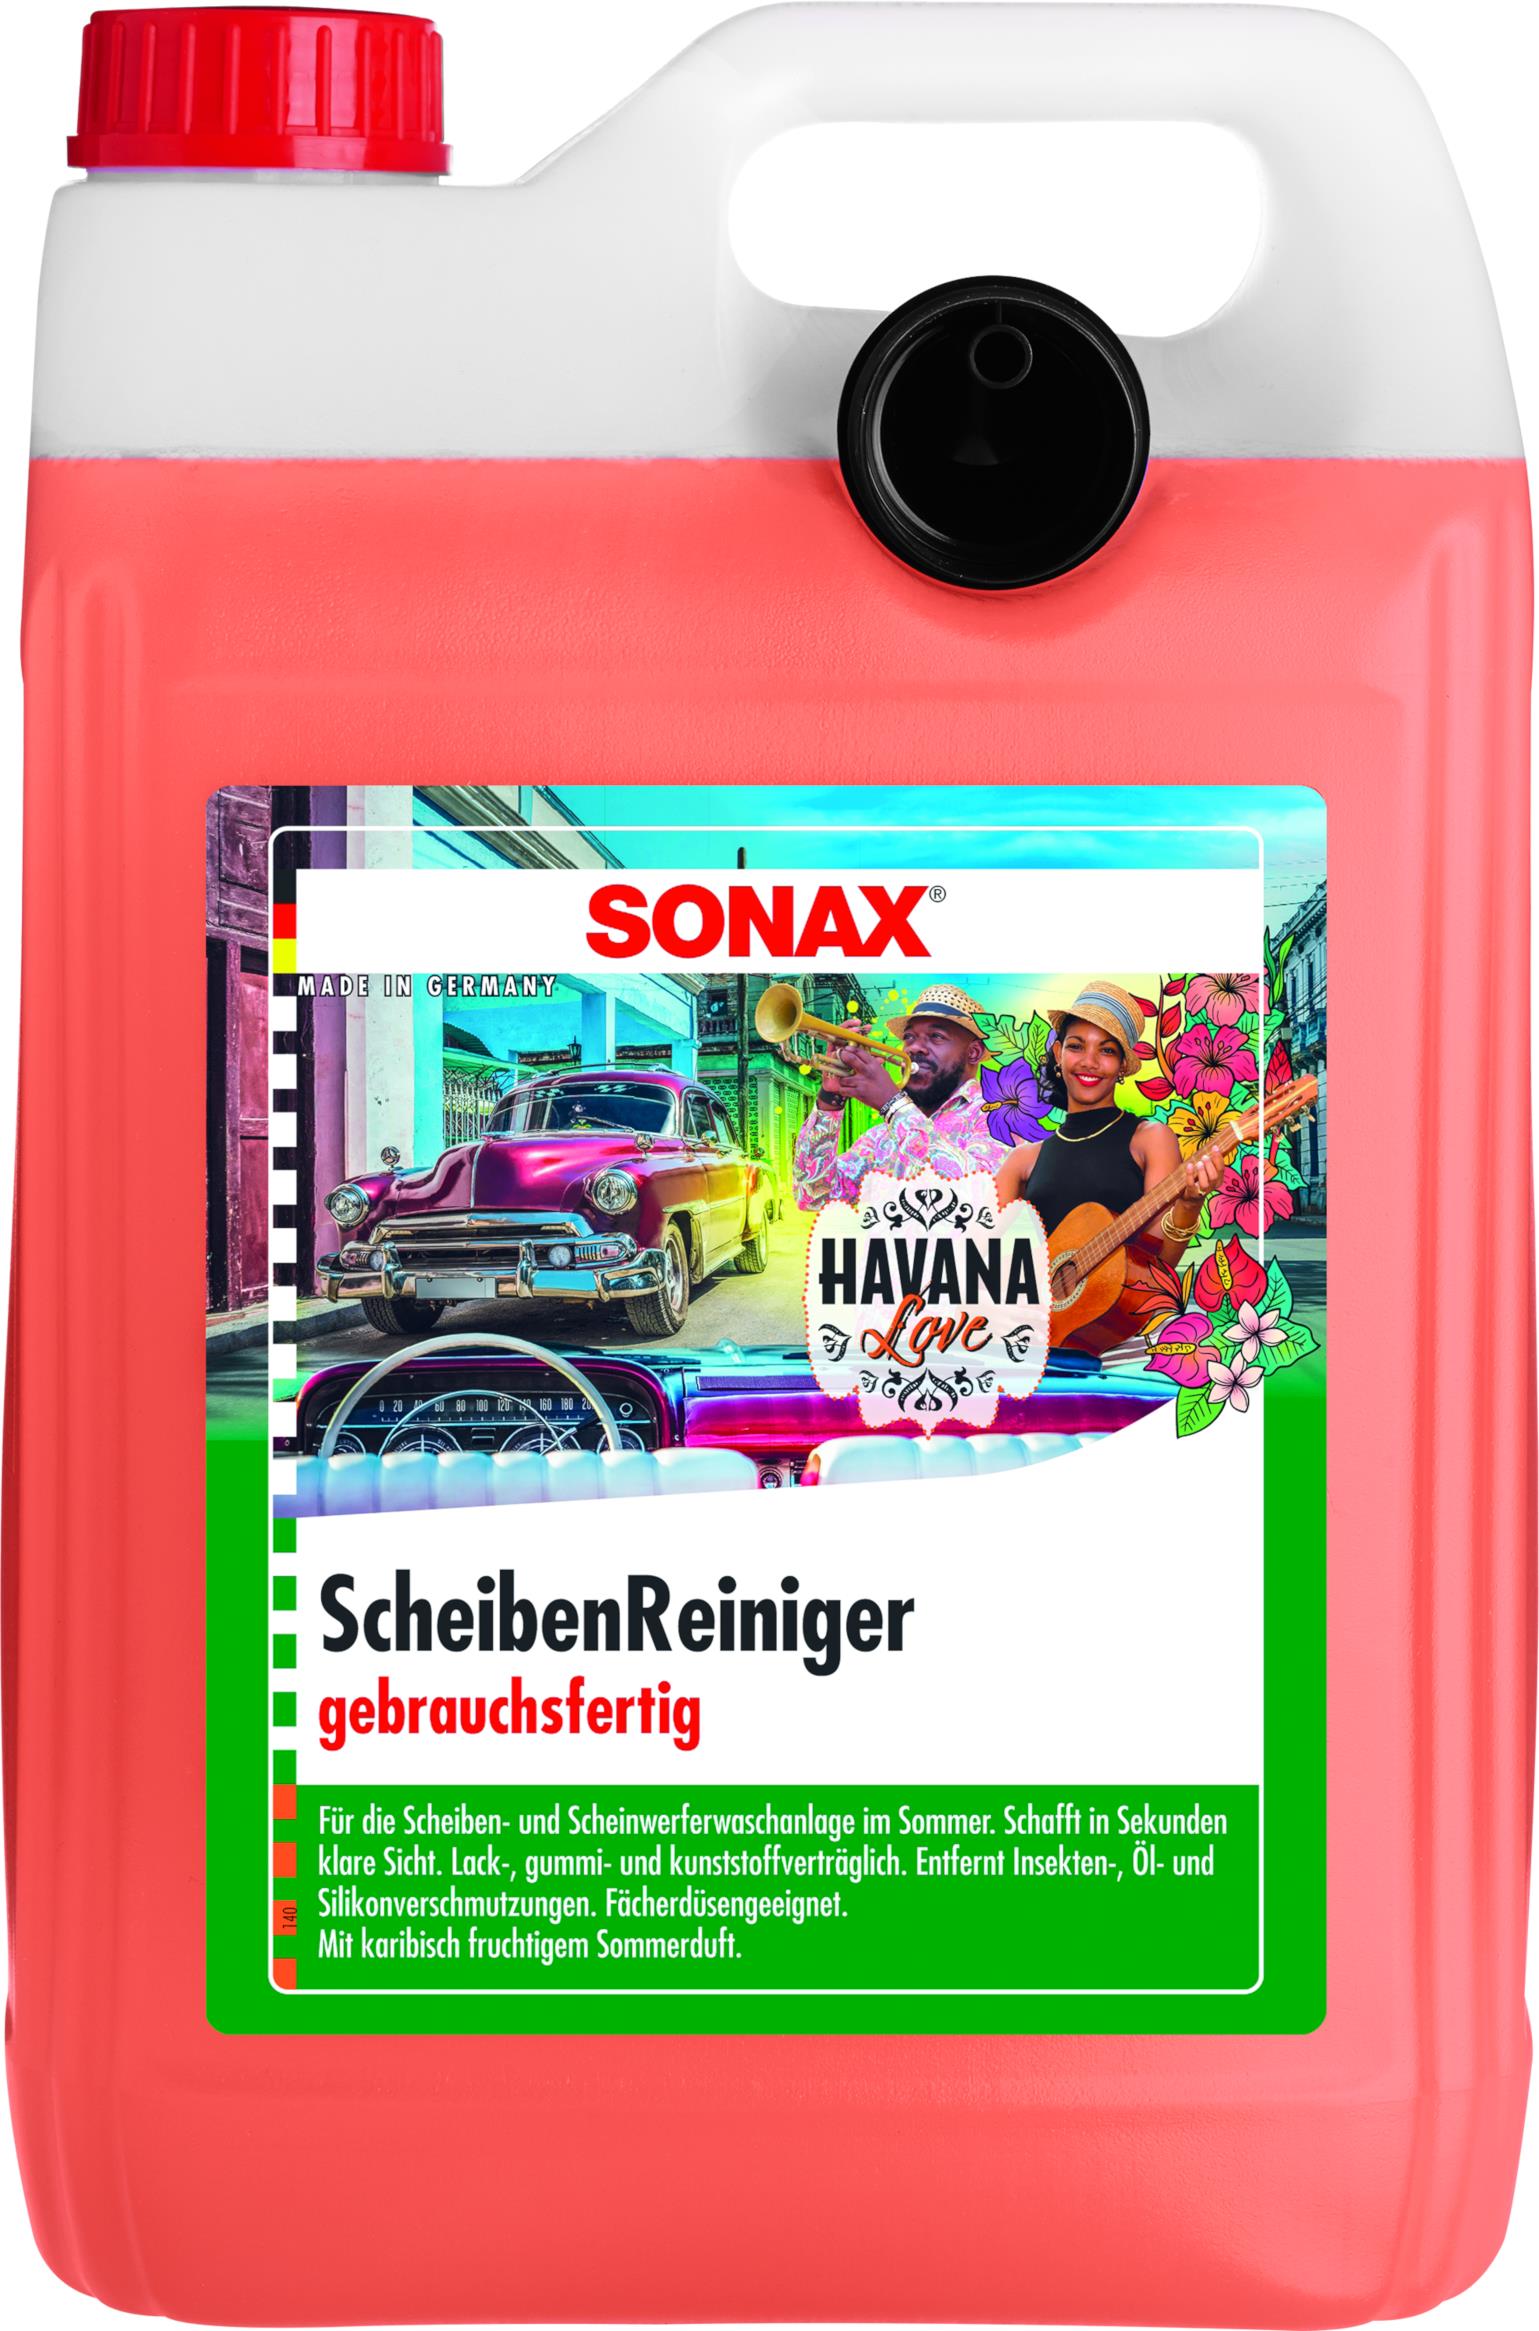 SONAX ScheibenReiniger gebrauchsfertig Havana Love 5 L, Scheibenwaschanlage, Reinigung & Pflege, Rund ums Fahrzeug